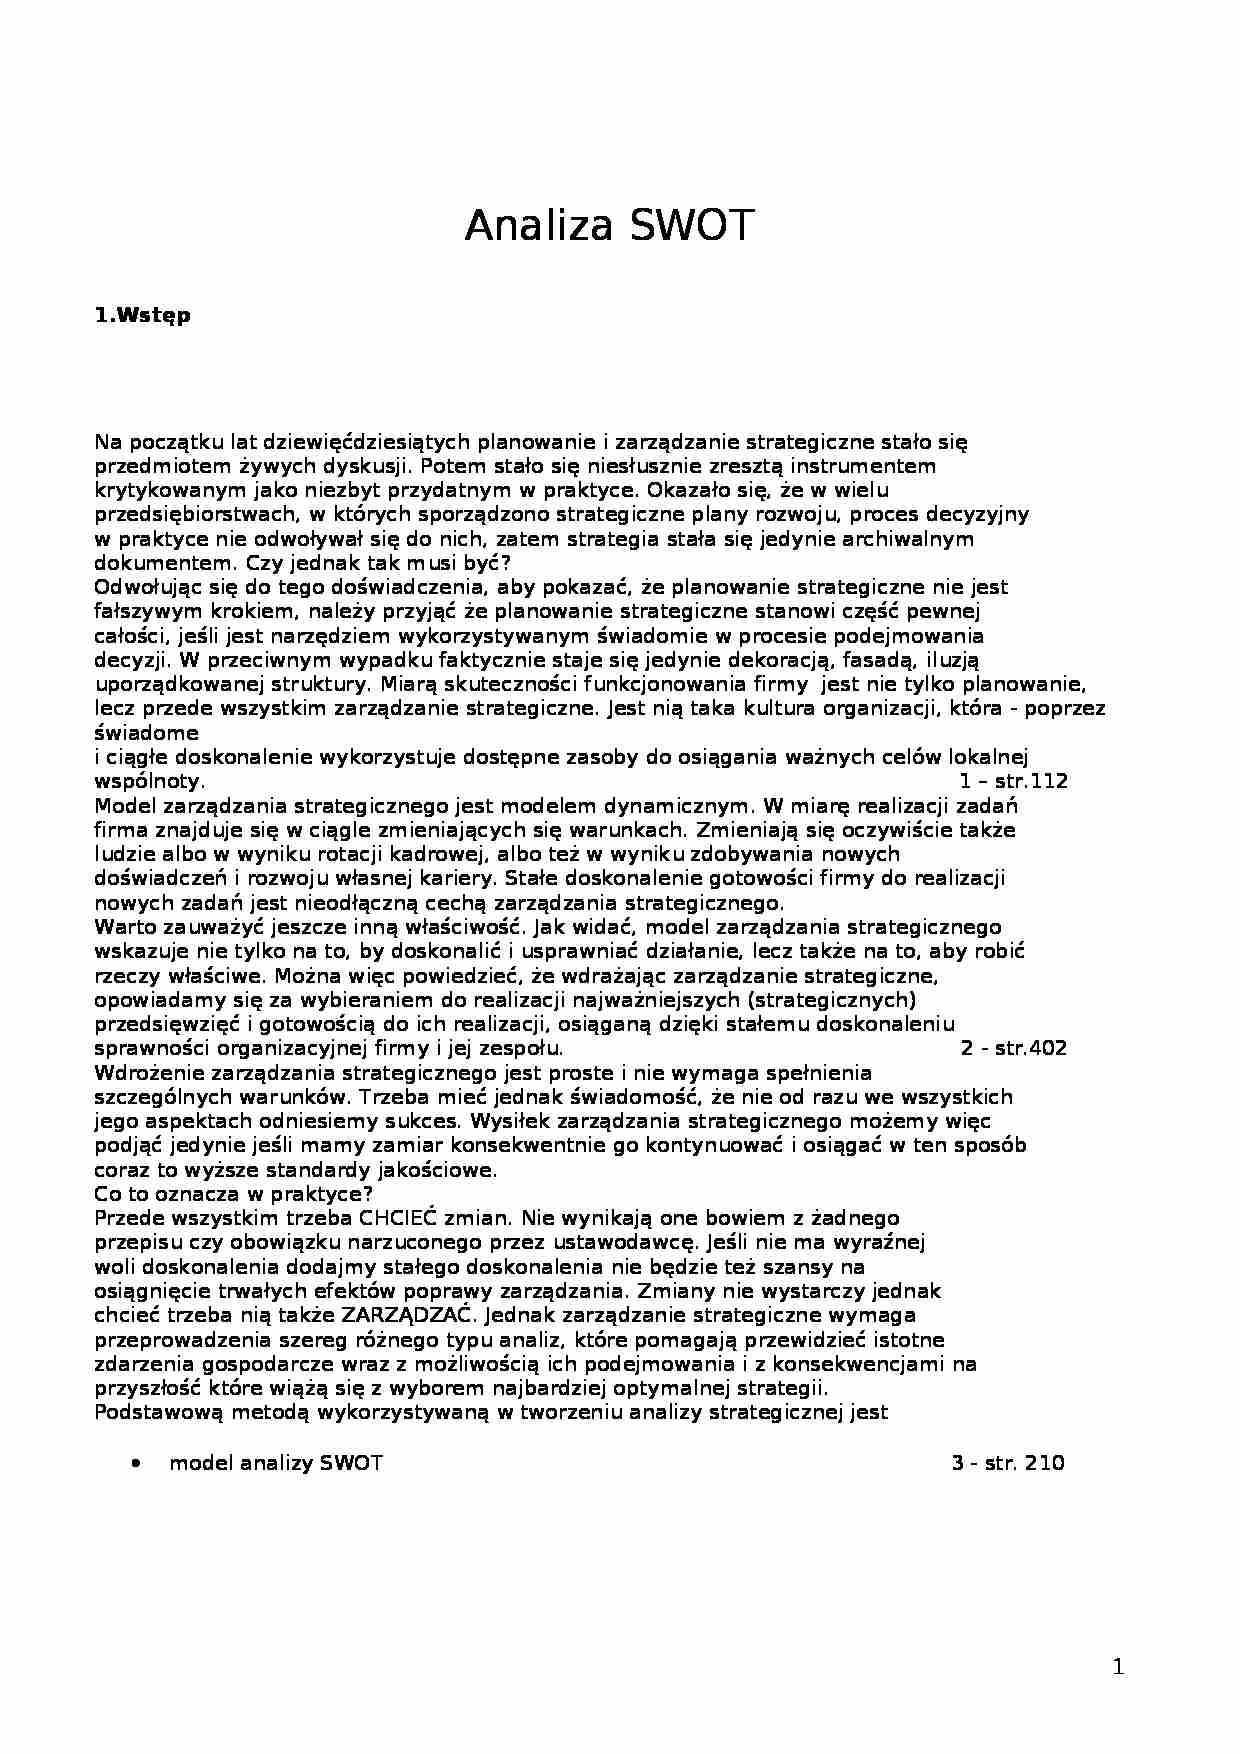 Analiza SWOT  - Analiza wewnętrzna - strona 1